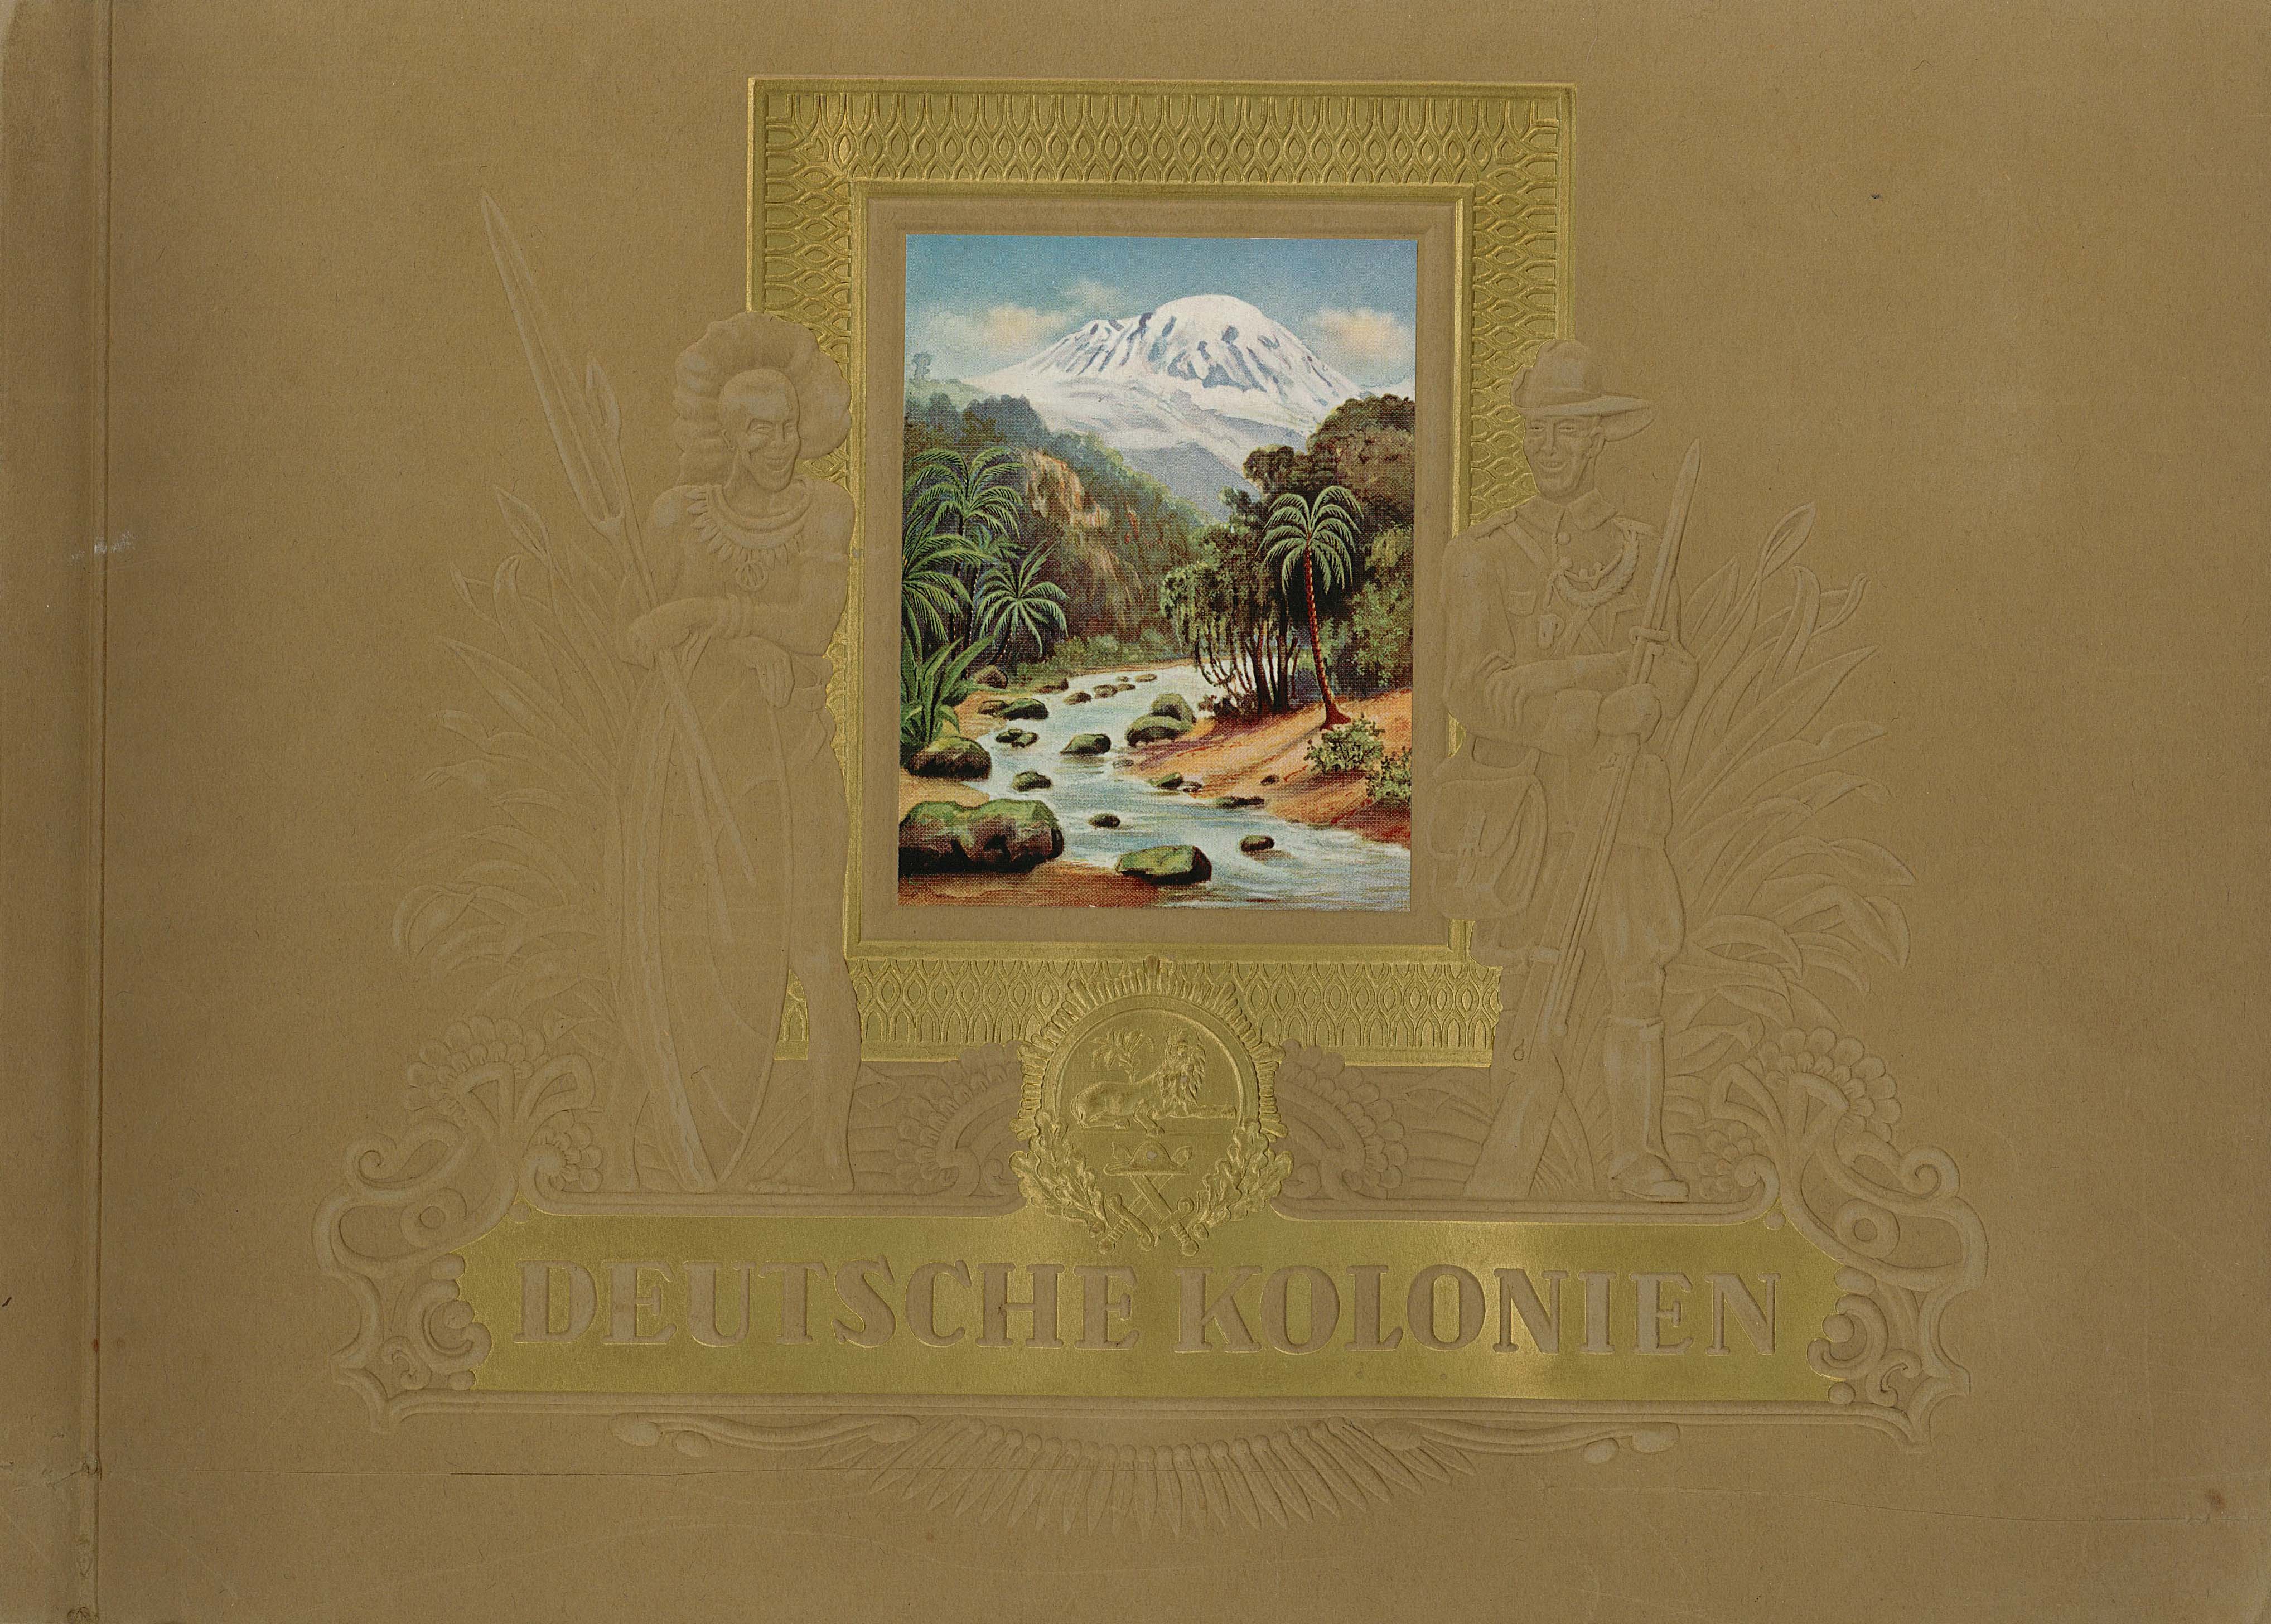 Sammelalbum "Deutsche Kolonien" (Museum Wolmirstedt RR-F)